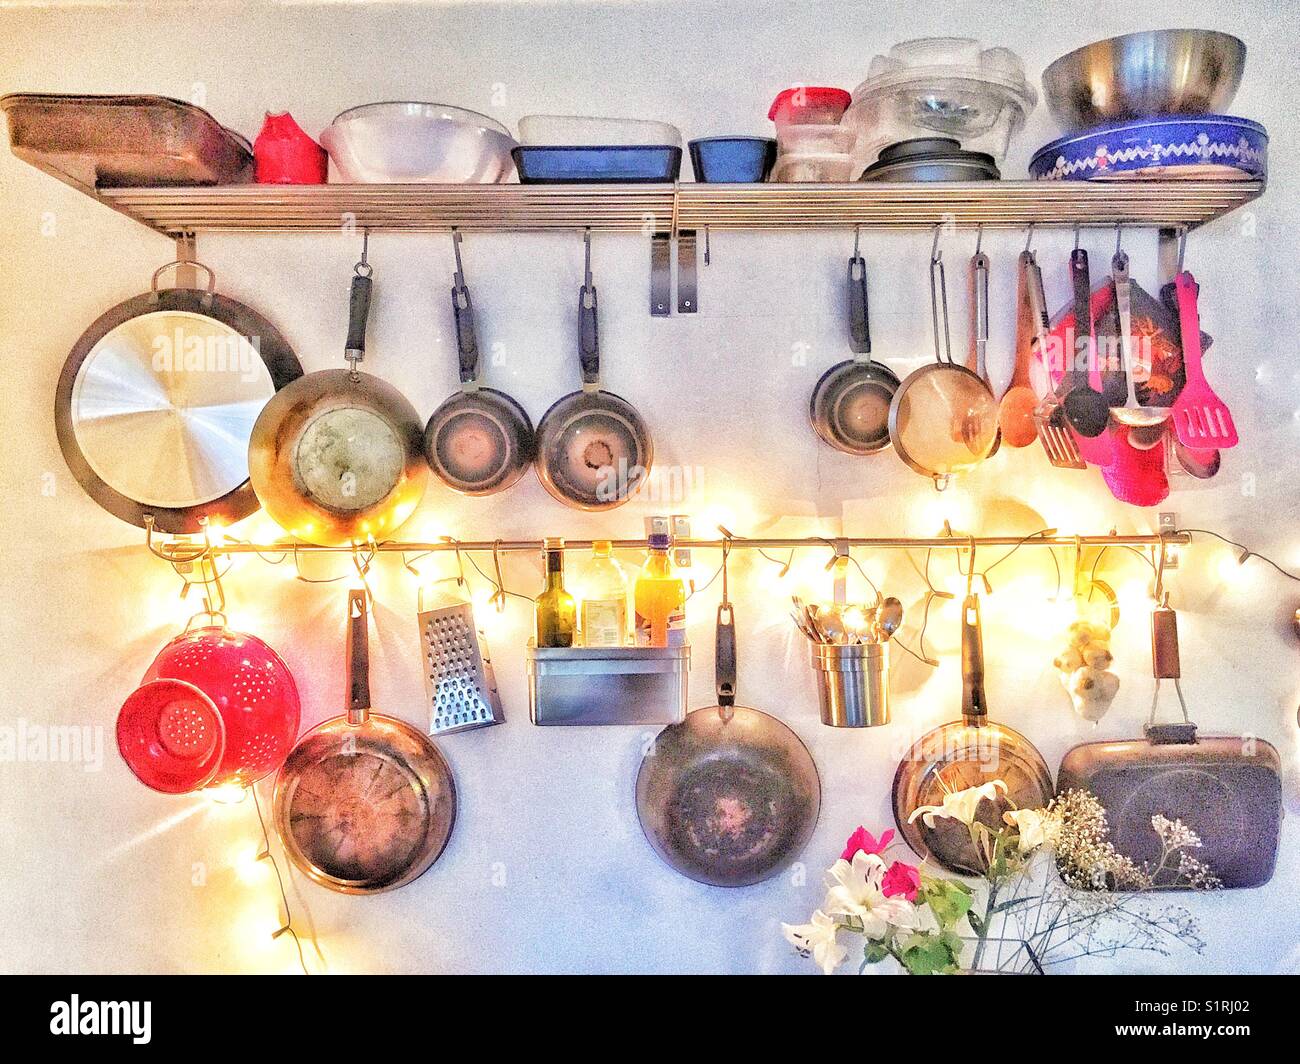 Kitchen utensil rack illuminated with fairy lights. Stock Photo